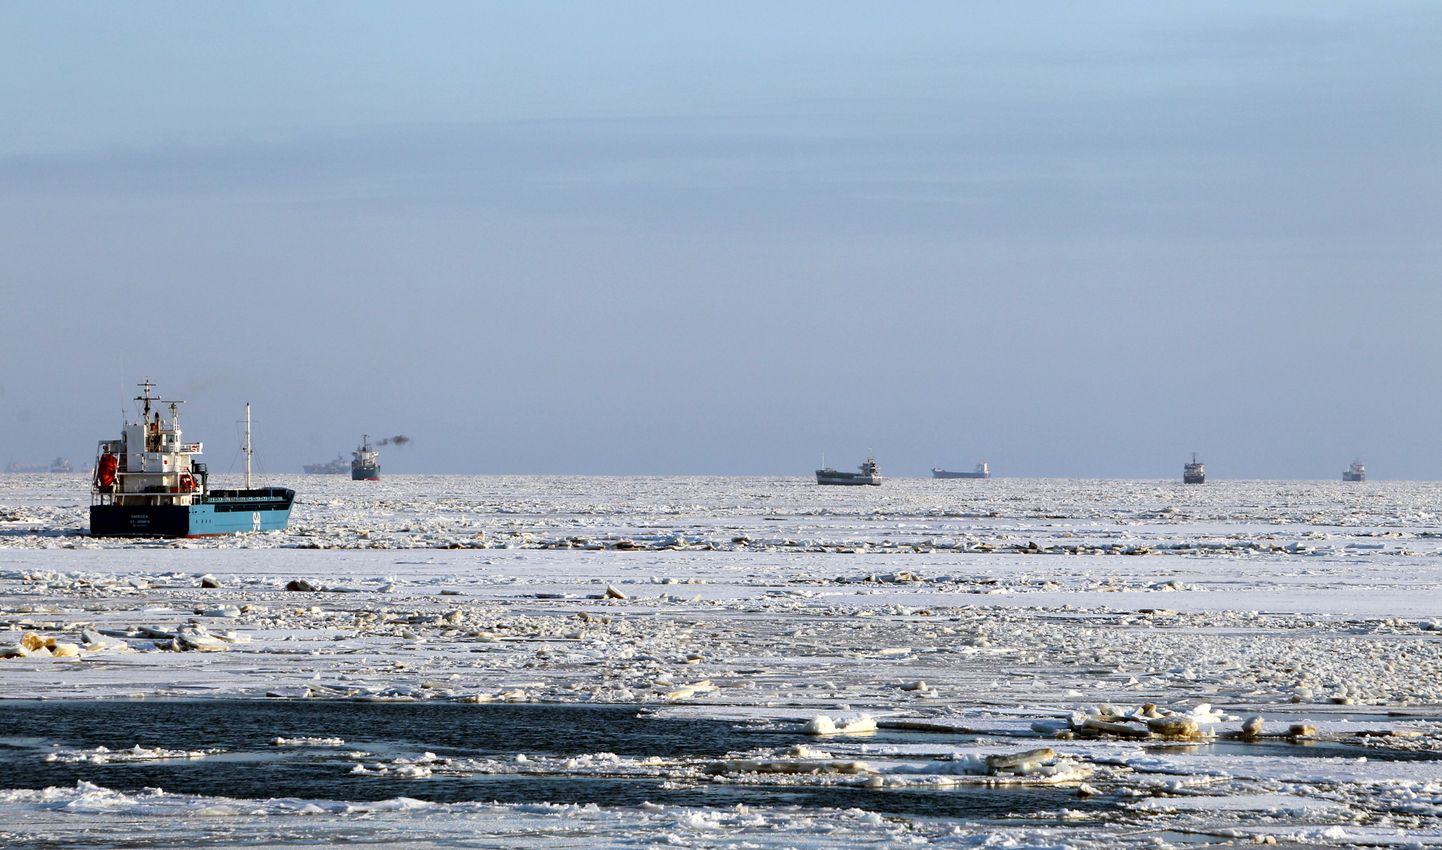 Laevad talvisel Liivi lahel jäämurdjat ootamas.